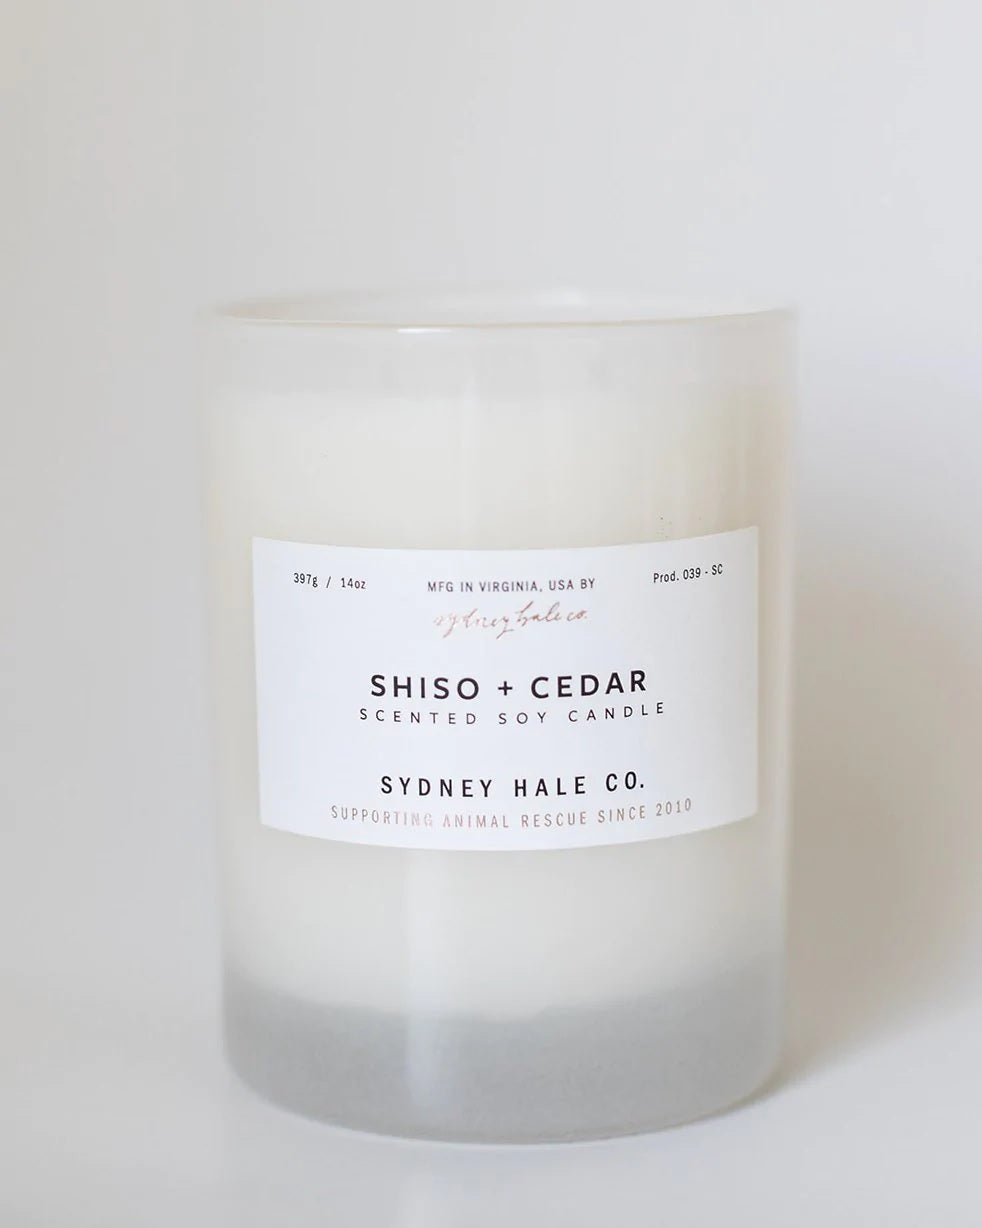 Sydney Hale Co - Shiso + Cedar Candle